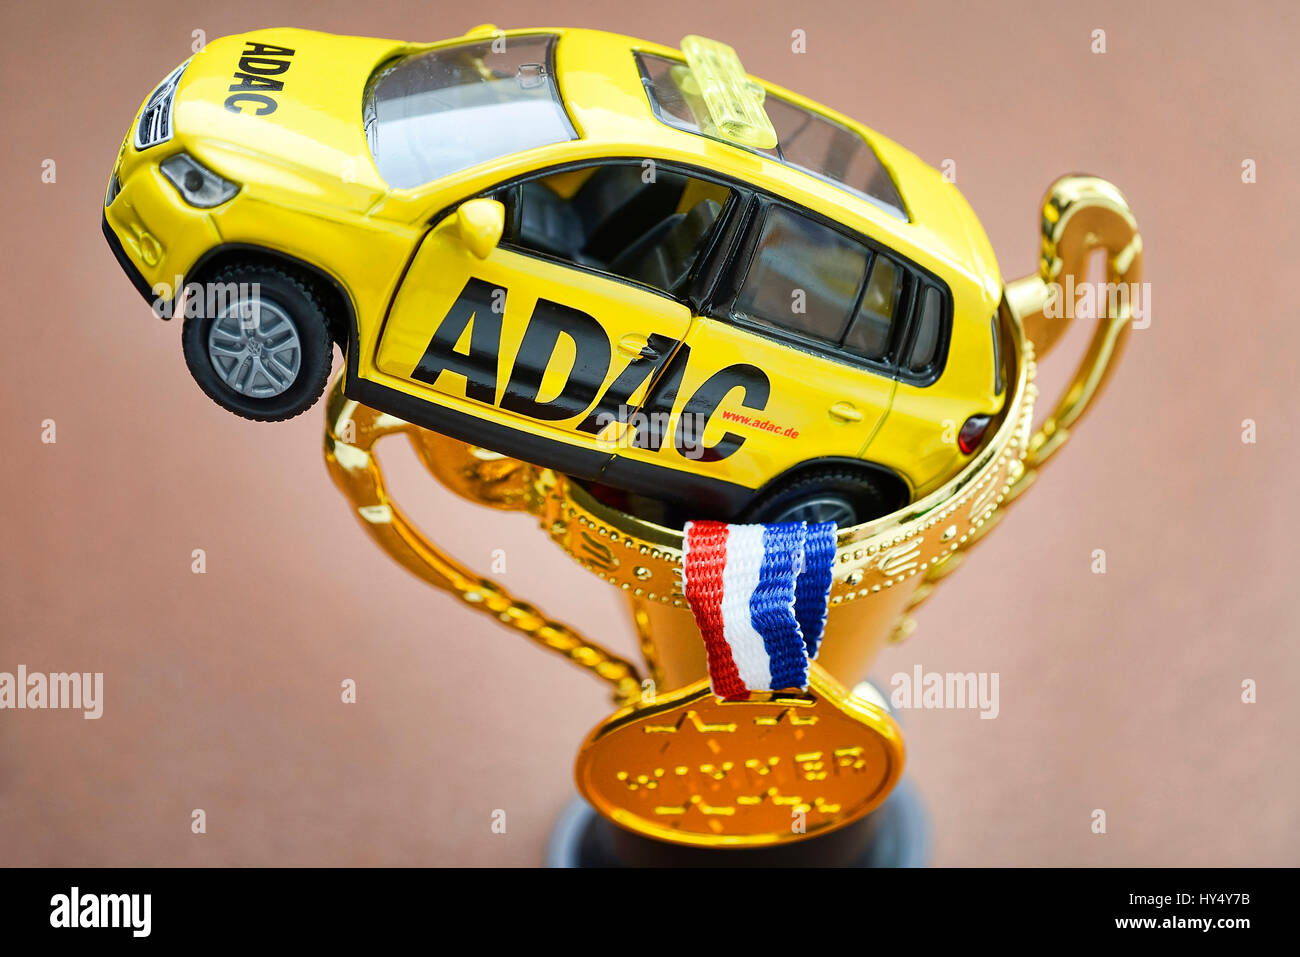 ADAC veicolo in miniatura, medaglione e cup, manipolazioni con il prezzo ADAC, ADAC Miniaturfahrzeug, Medaille und Pokal, Manipulationen beim ADAC-Prei Foto Stock